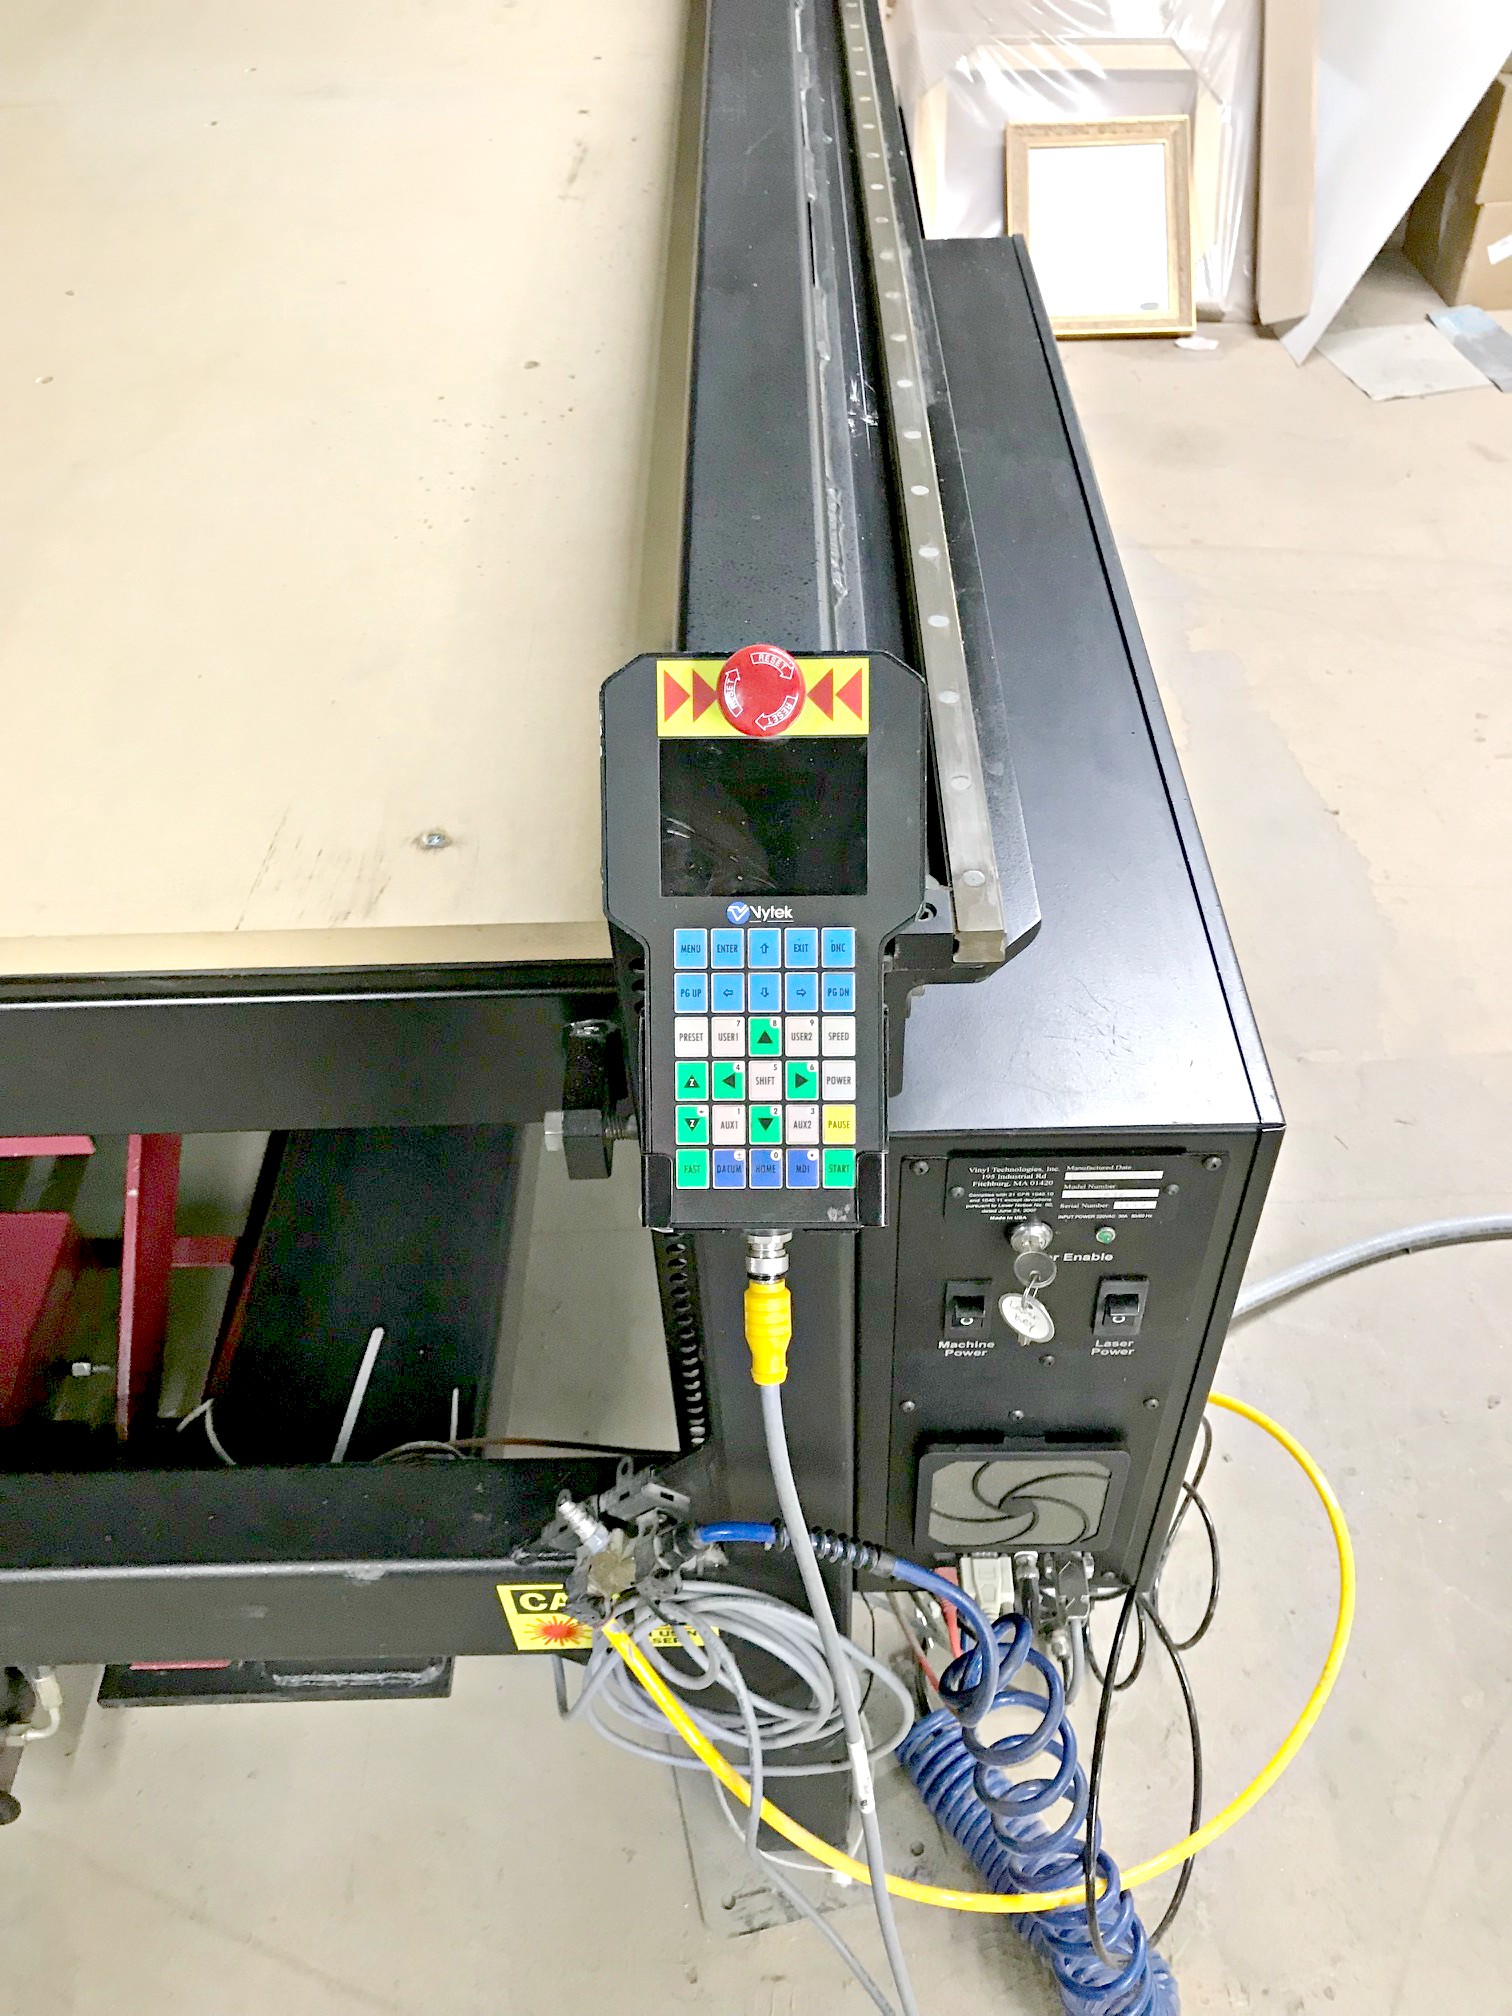 Vytek LST4896 L-Star Laser Engraving System (used) Item # UE-50 (NC)